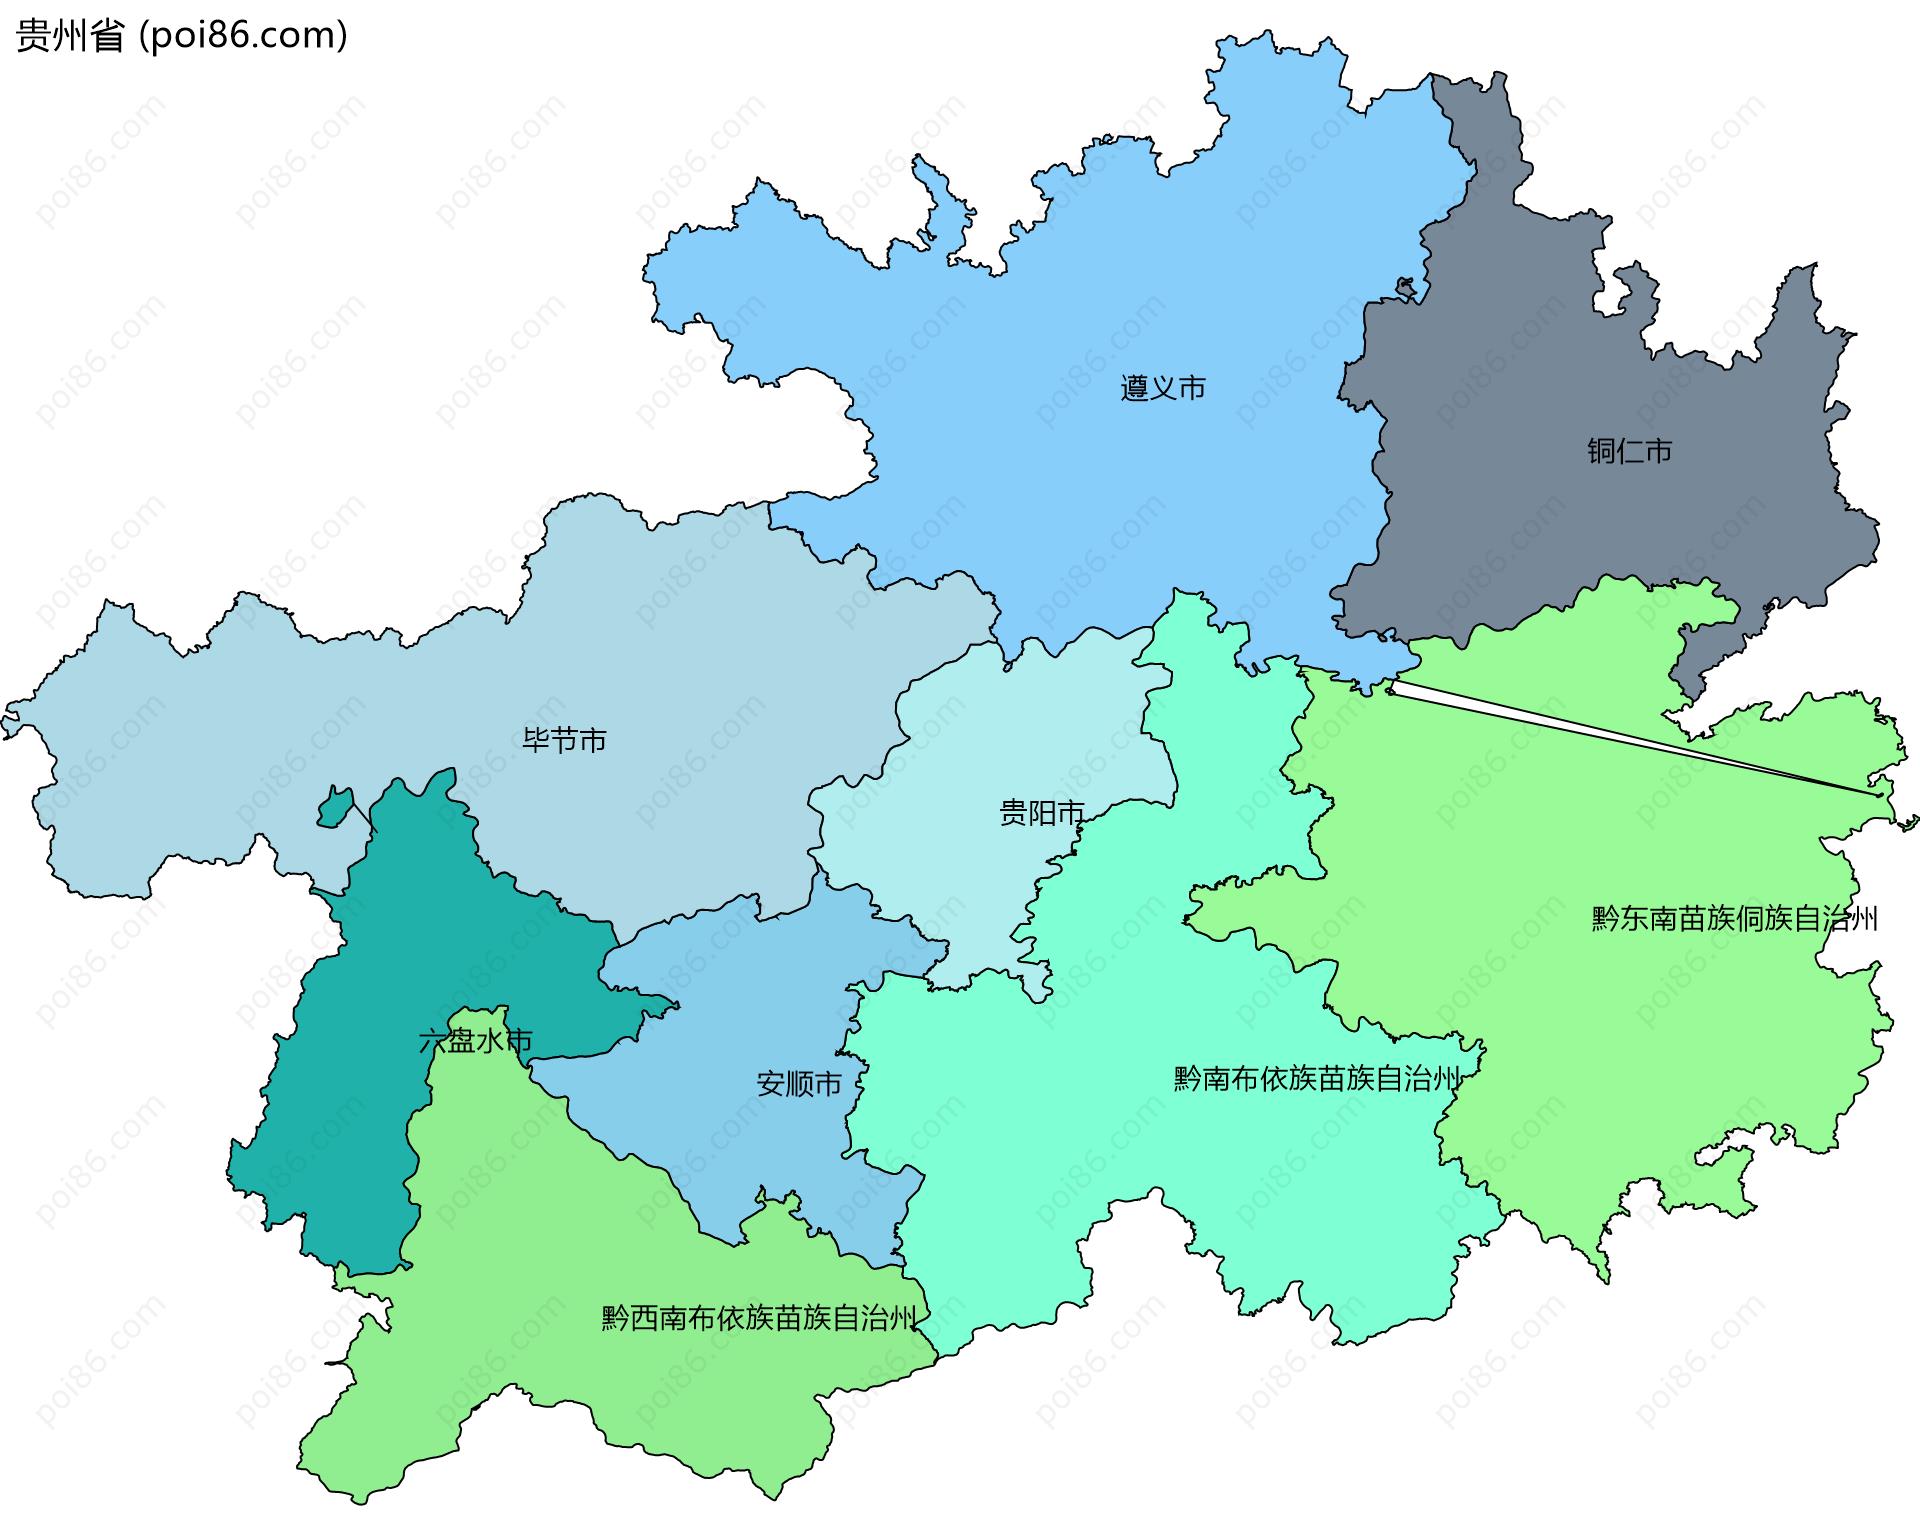 贵州省边界地图